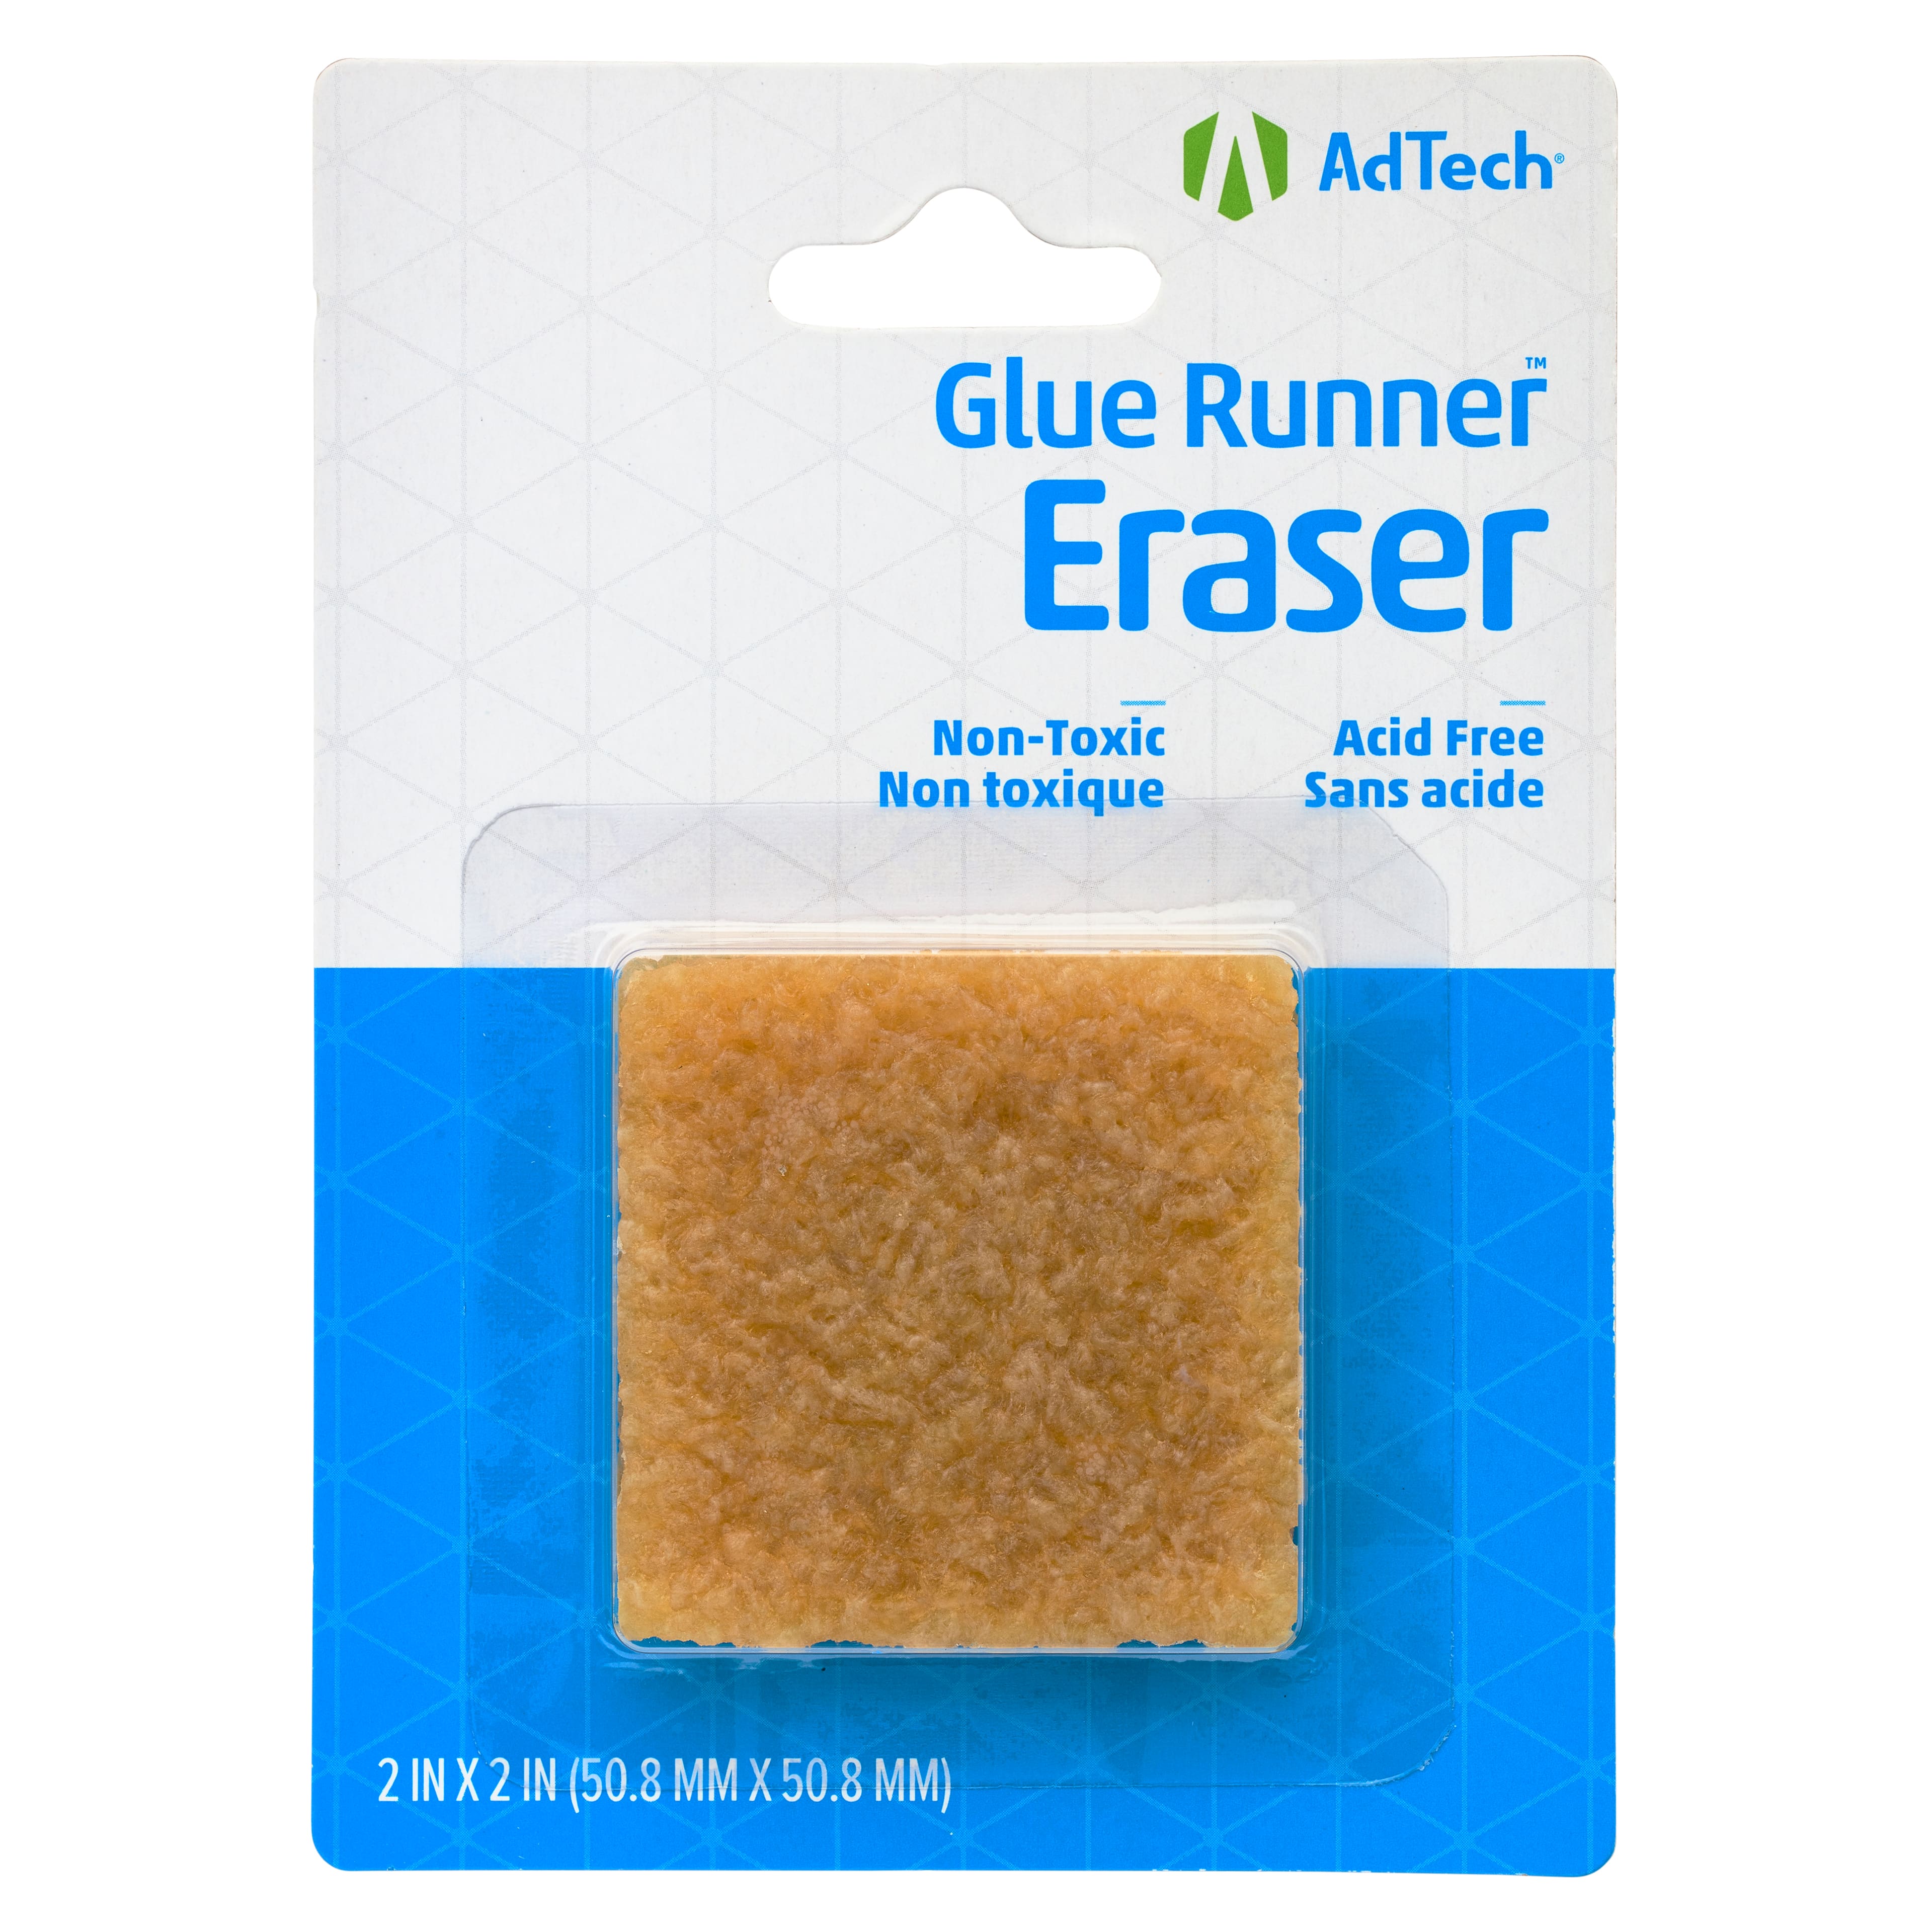 Ad Tech Glue Runner Eraser